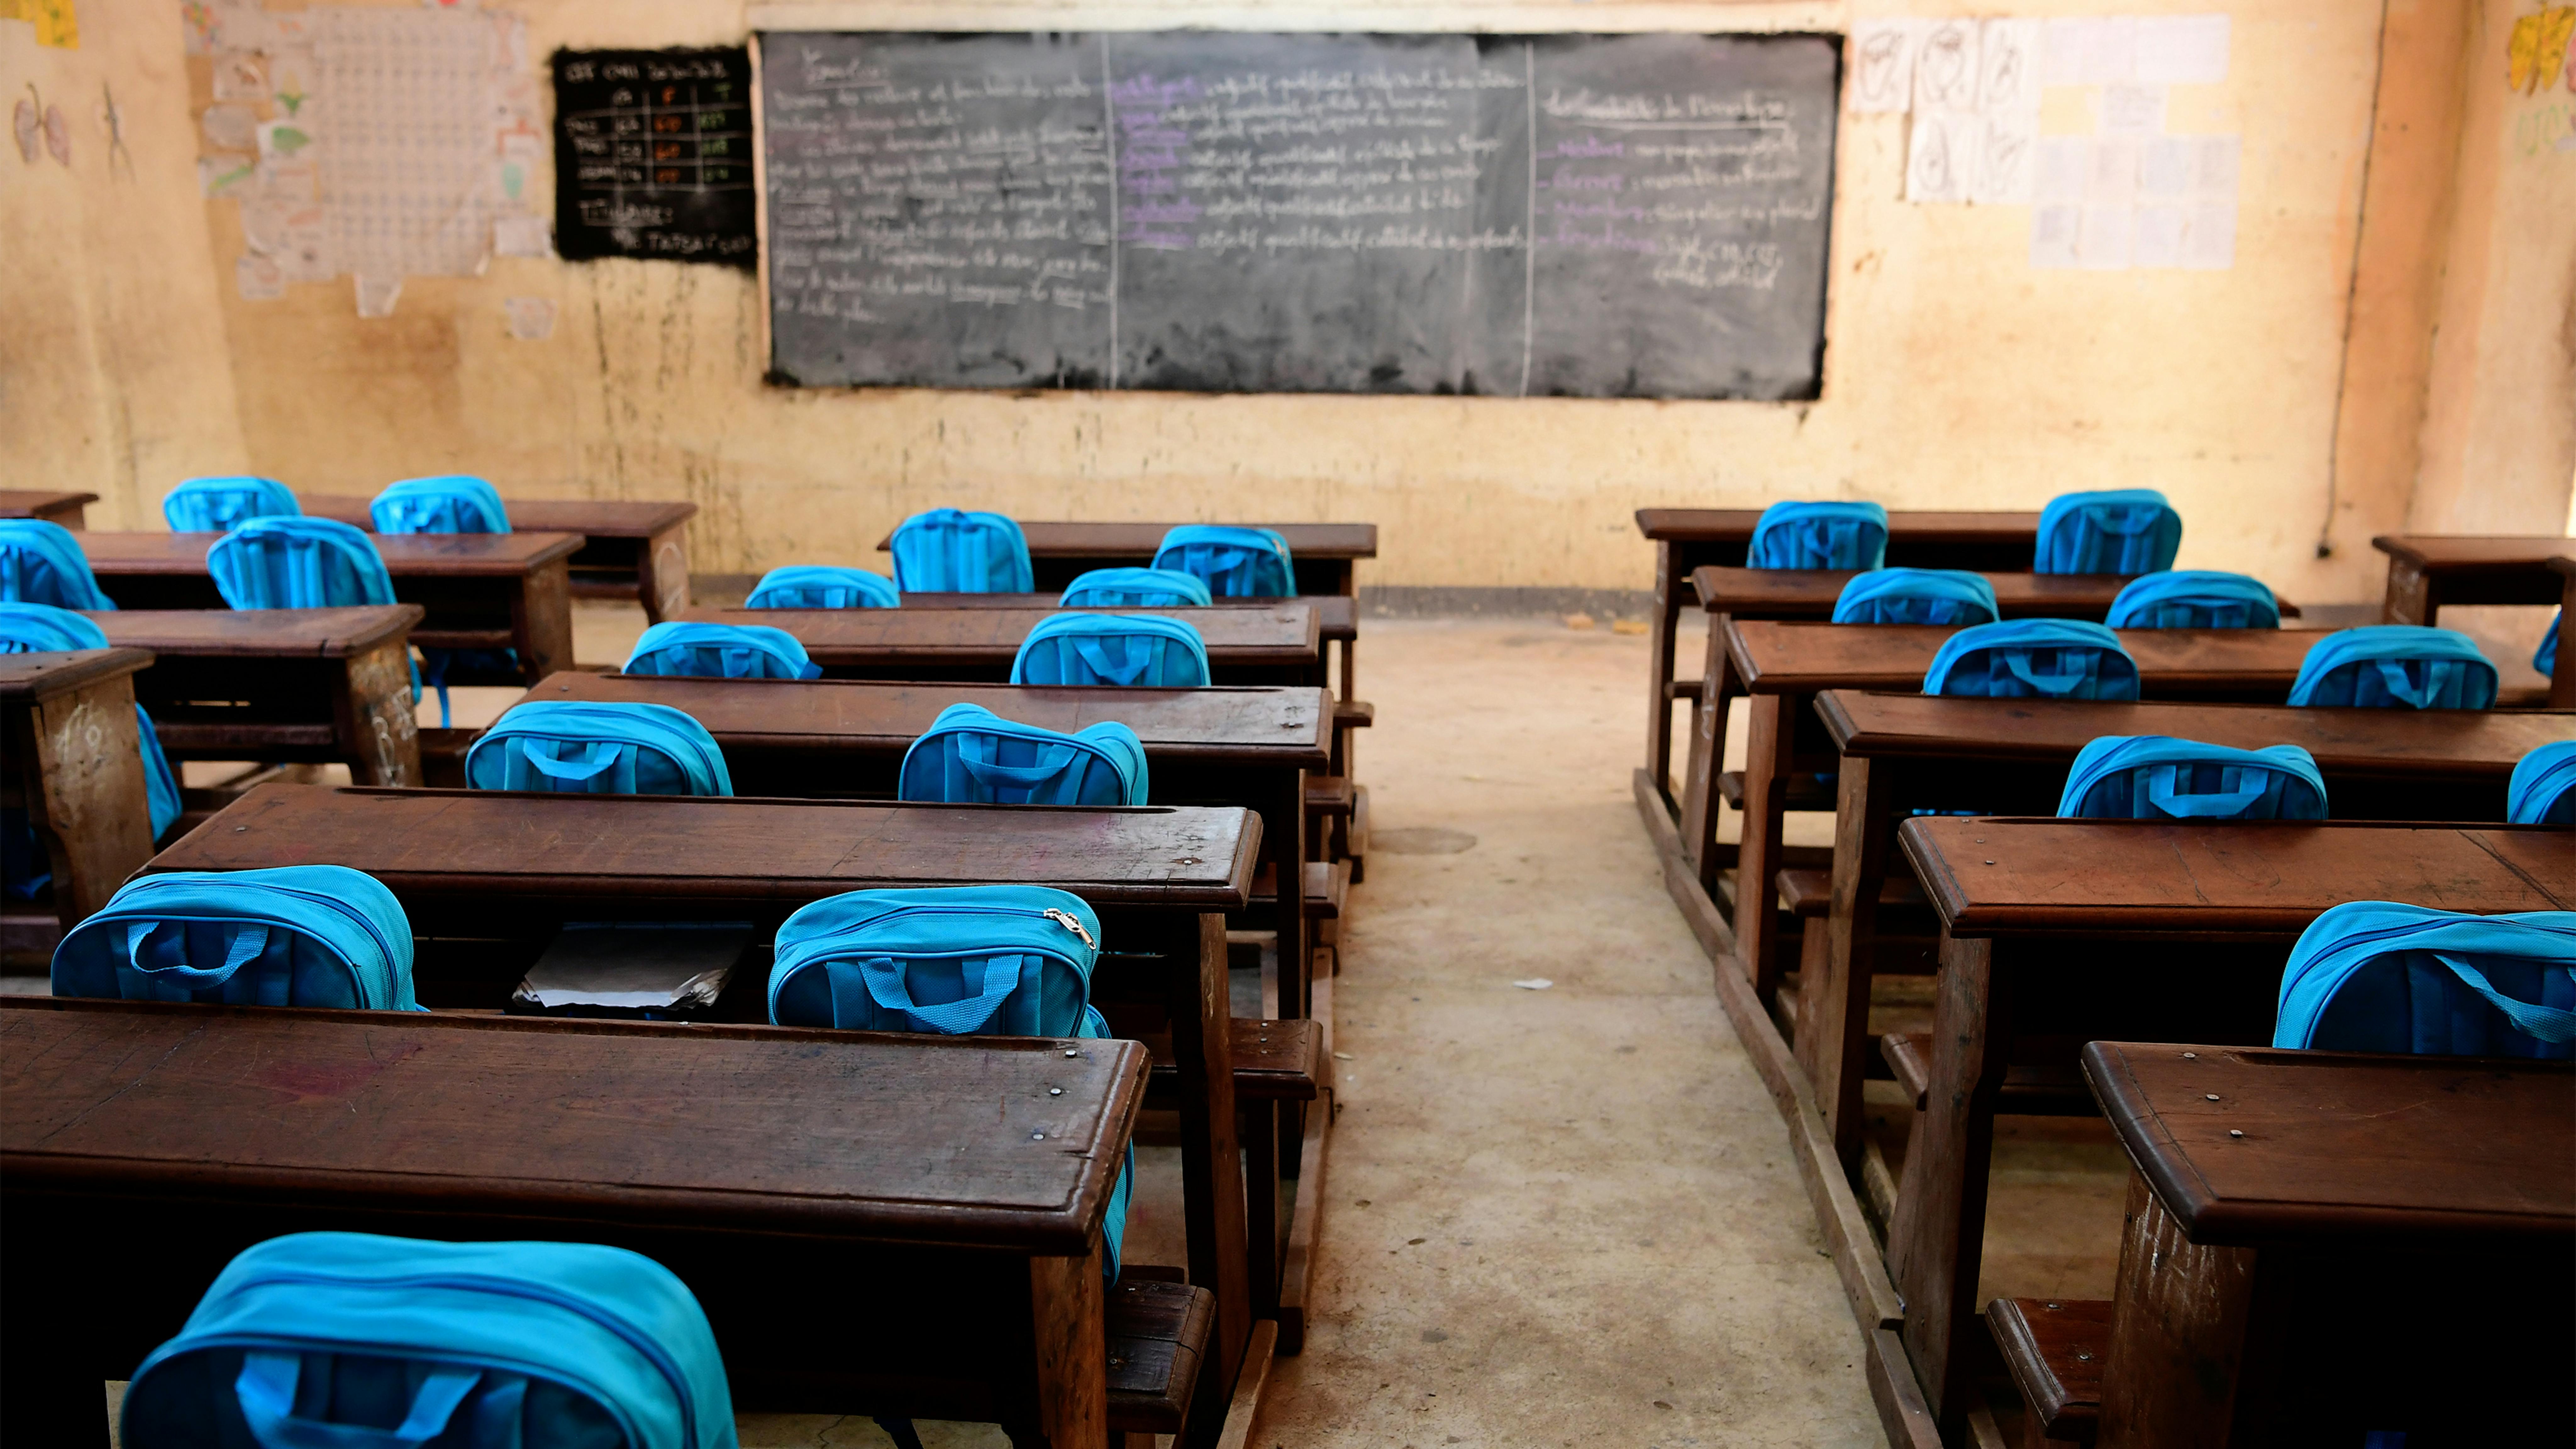 Un'aula vuota nella scuola pubblica inclusiva Founangué, a Maroua, nell'estremo nord del Camerun, finanziata dall'UNICEF.